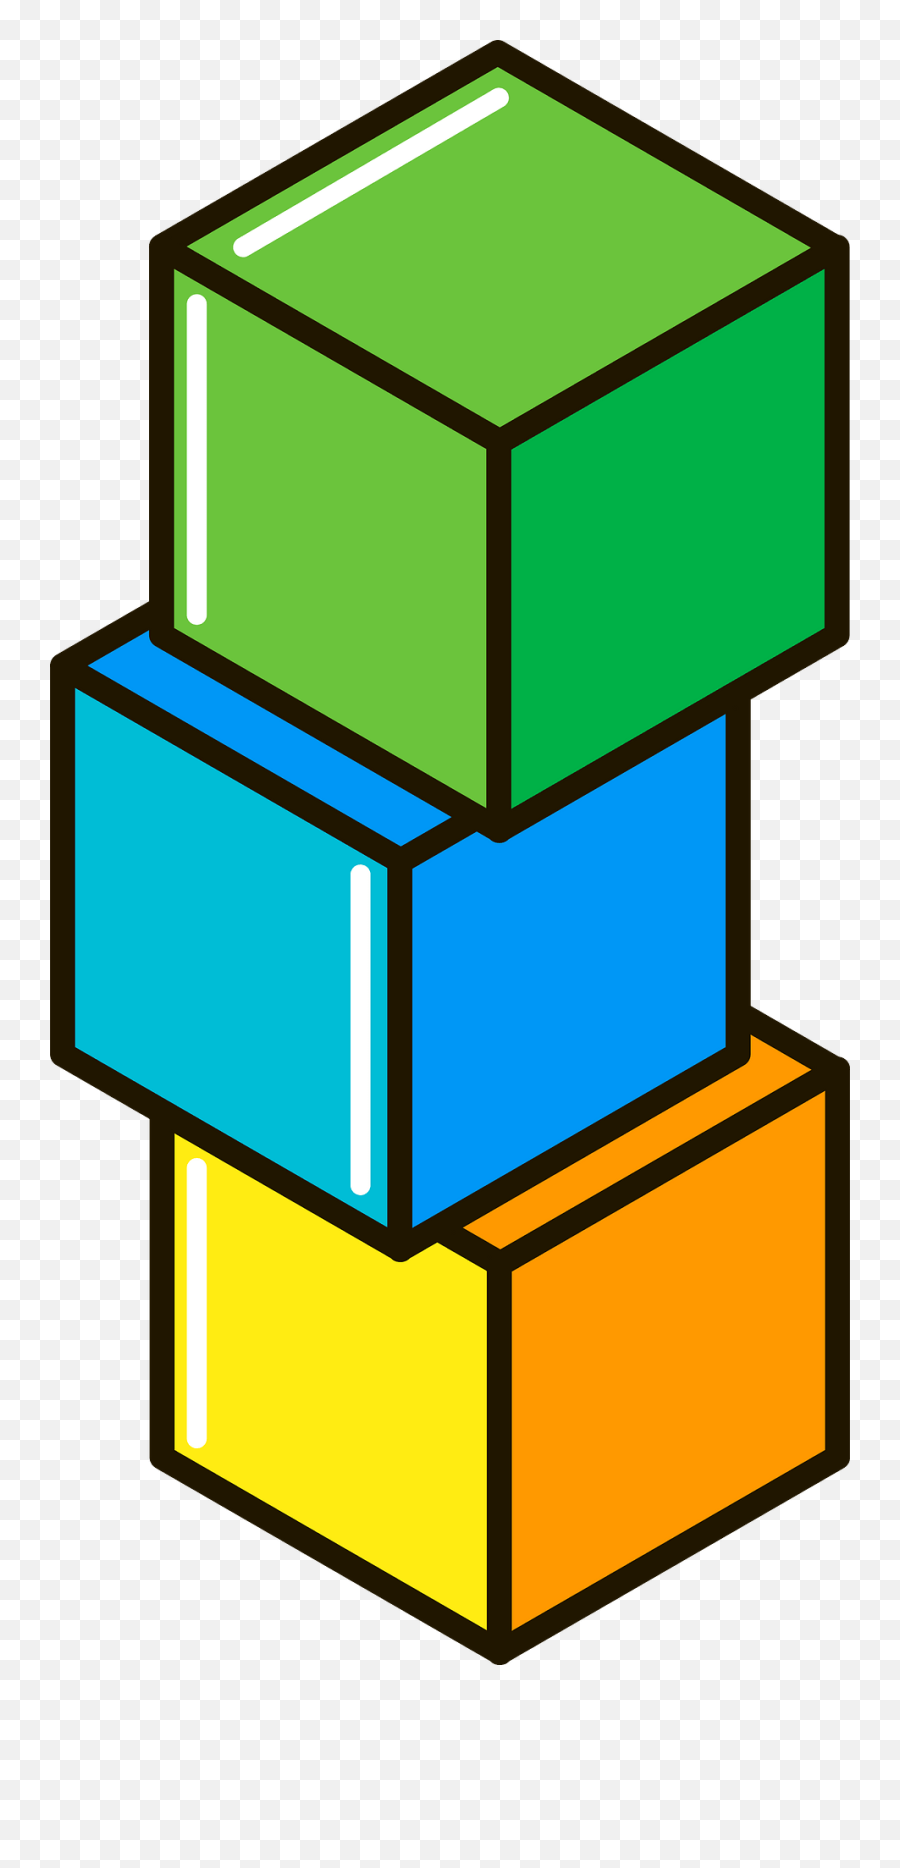 Building Blocks Clipart - Transparent Building Blocks Clipart Emoji,Blocks Clipart